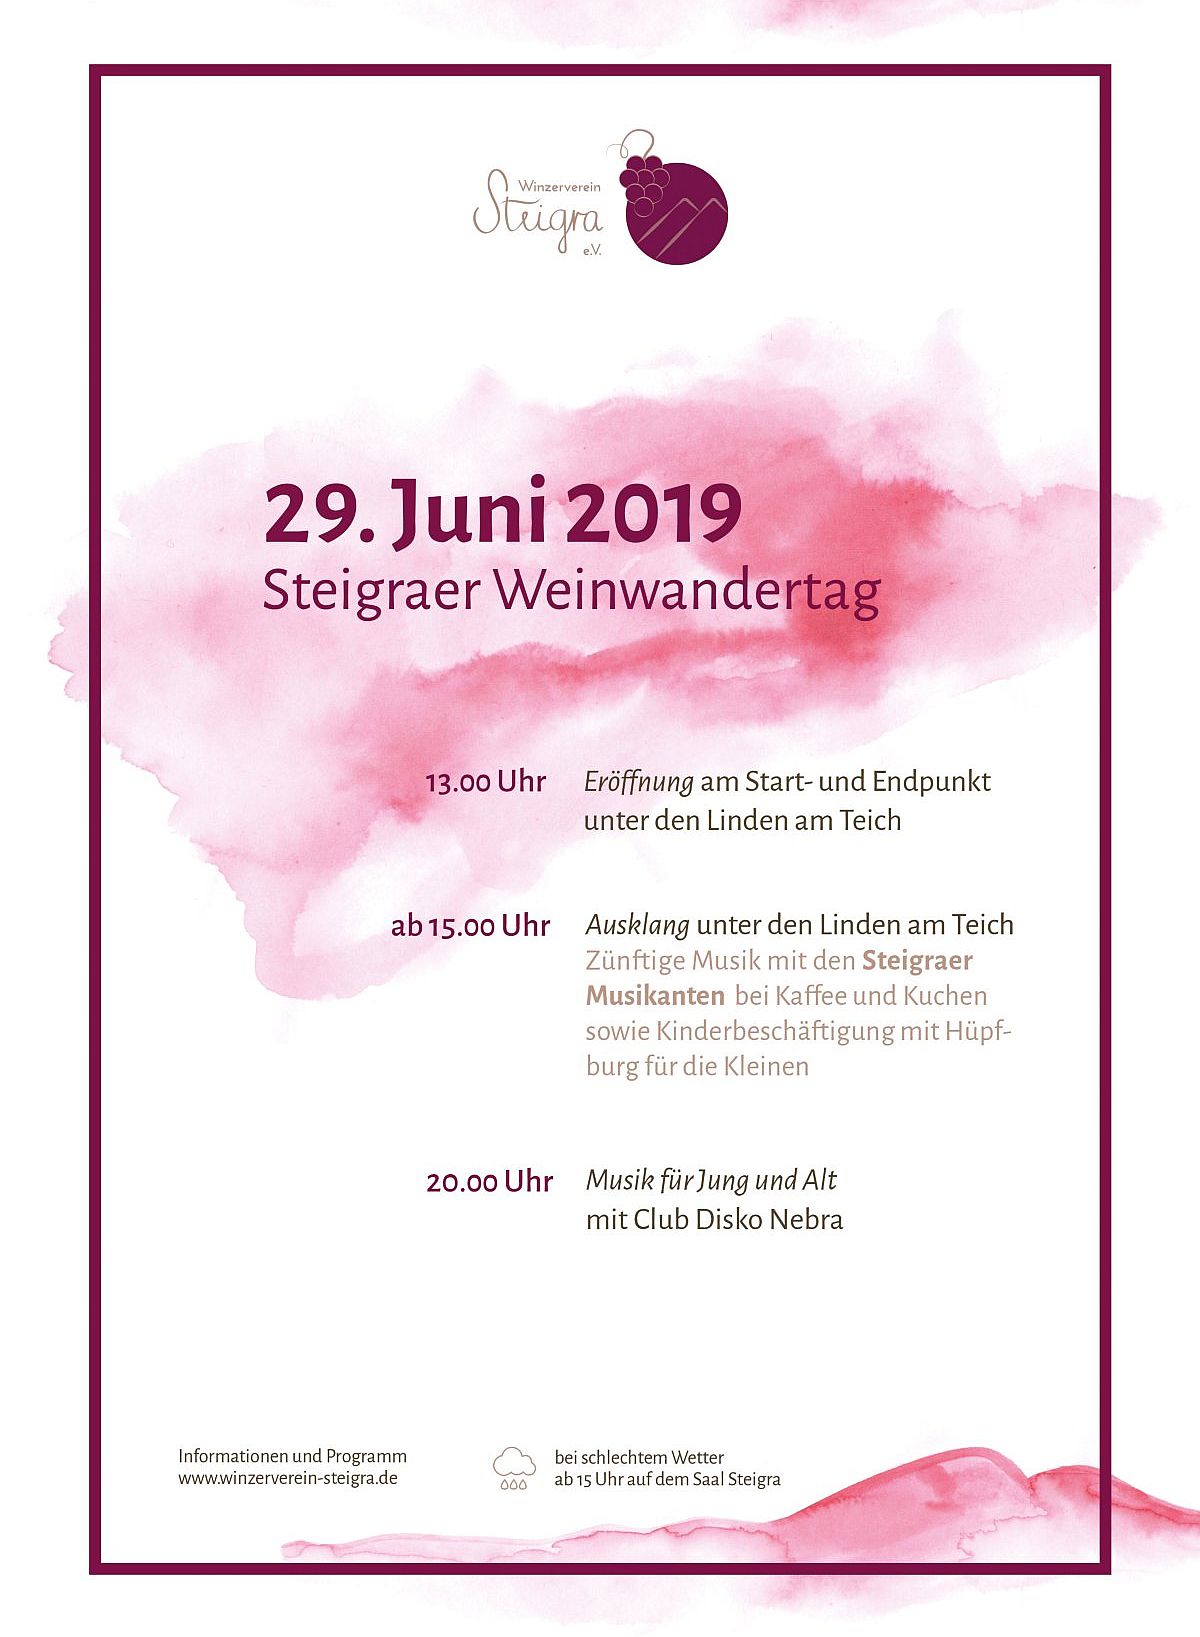 Die Weinwanderung in Steigra am 29. Juni 2019 - und zurck